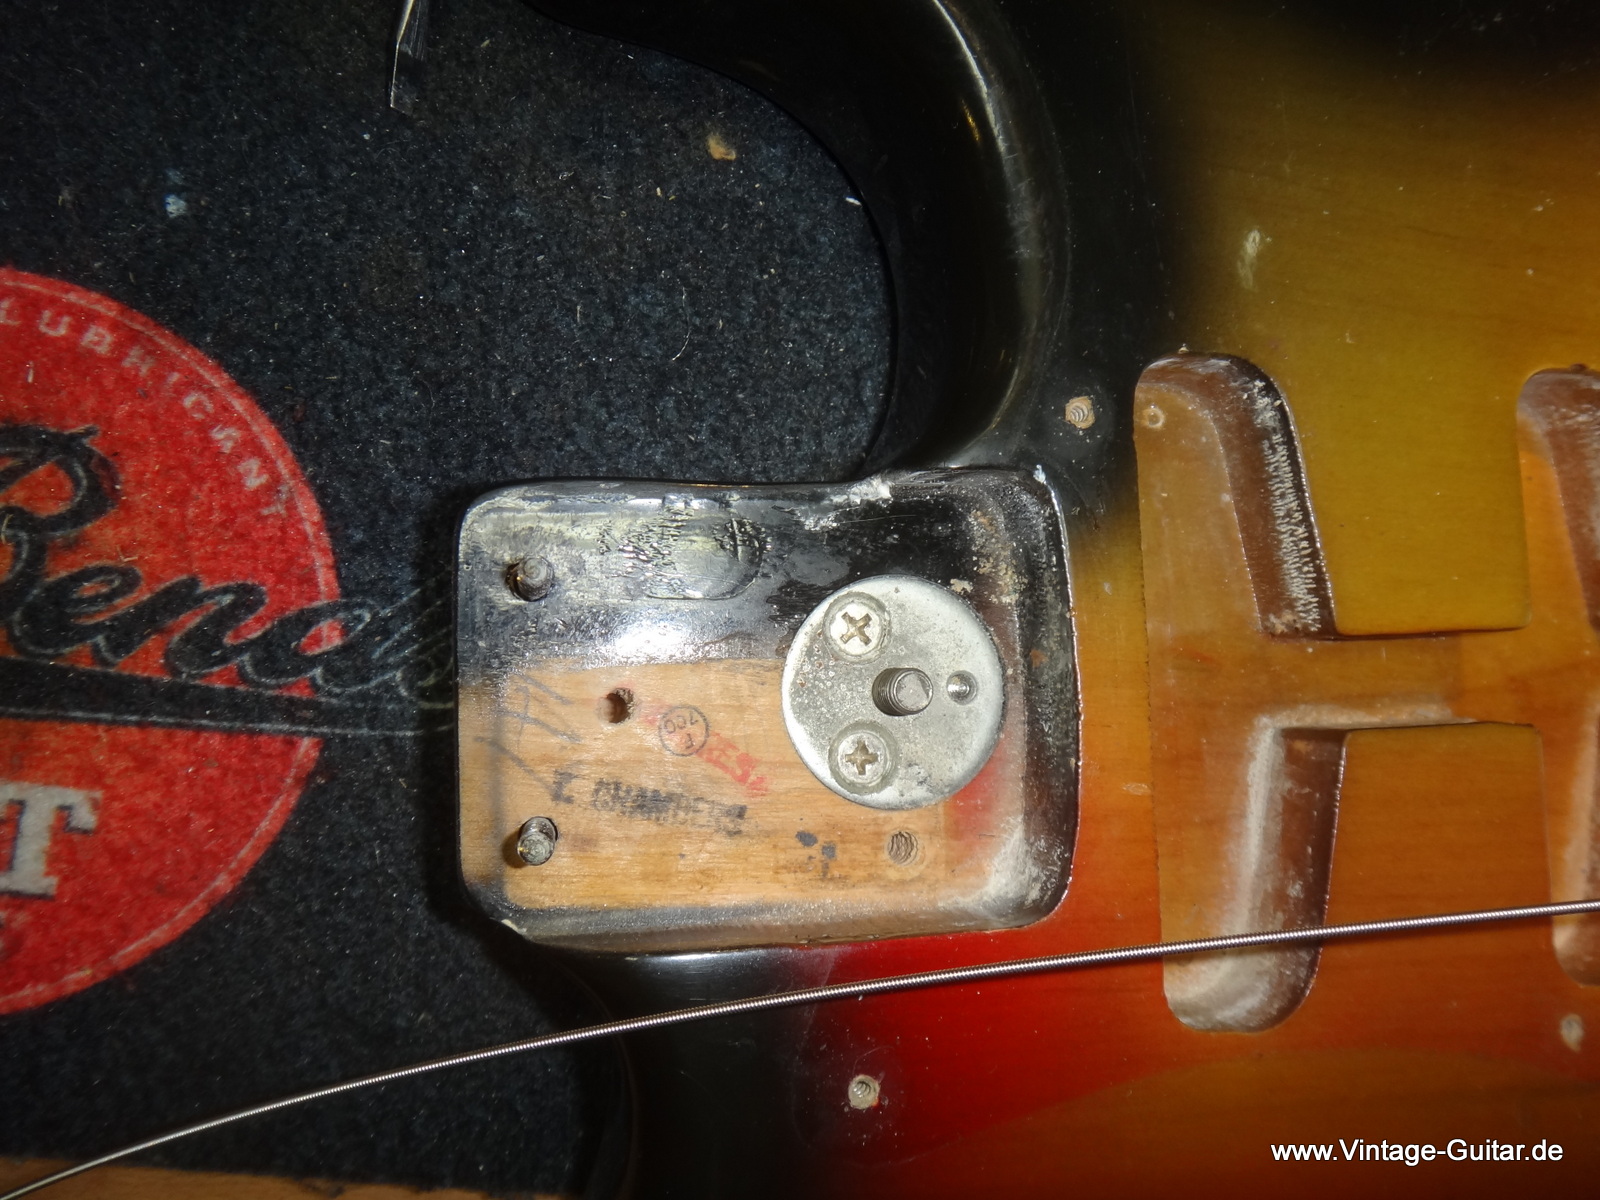 Fender-Stratocaster-1972-sunburst-inside-006.JPG